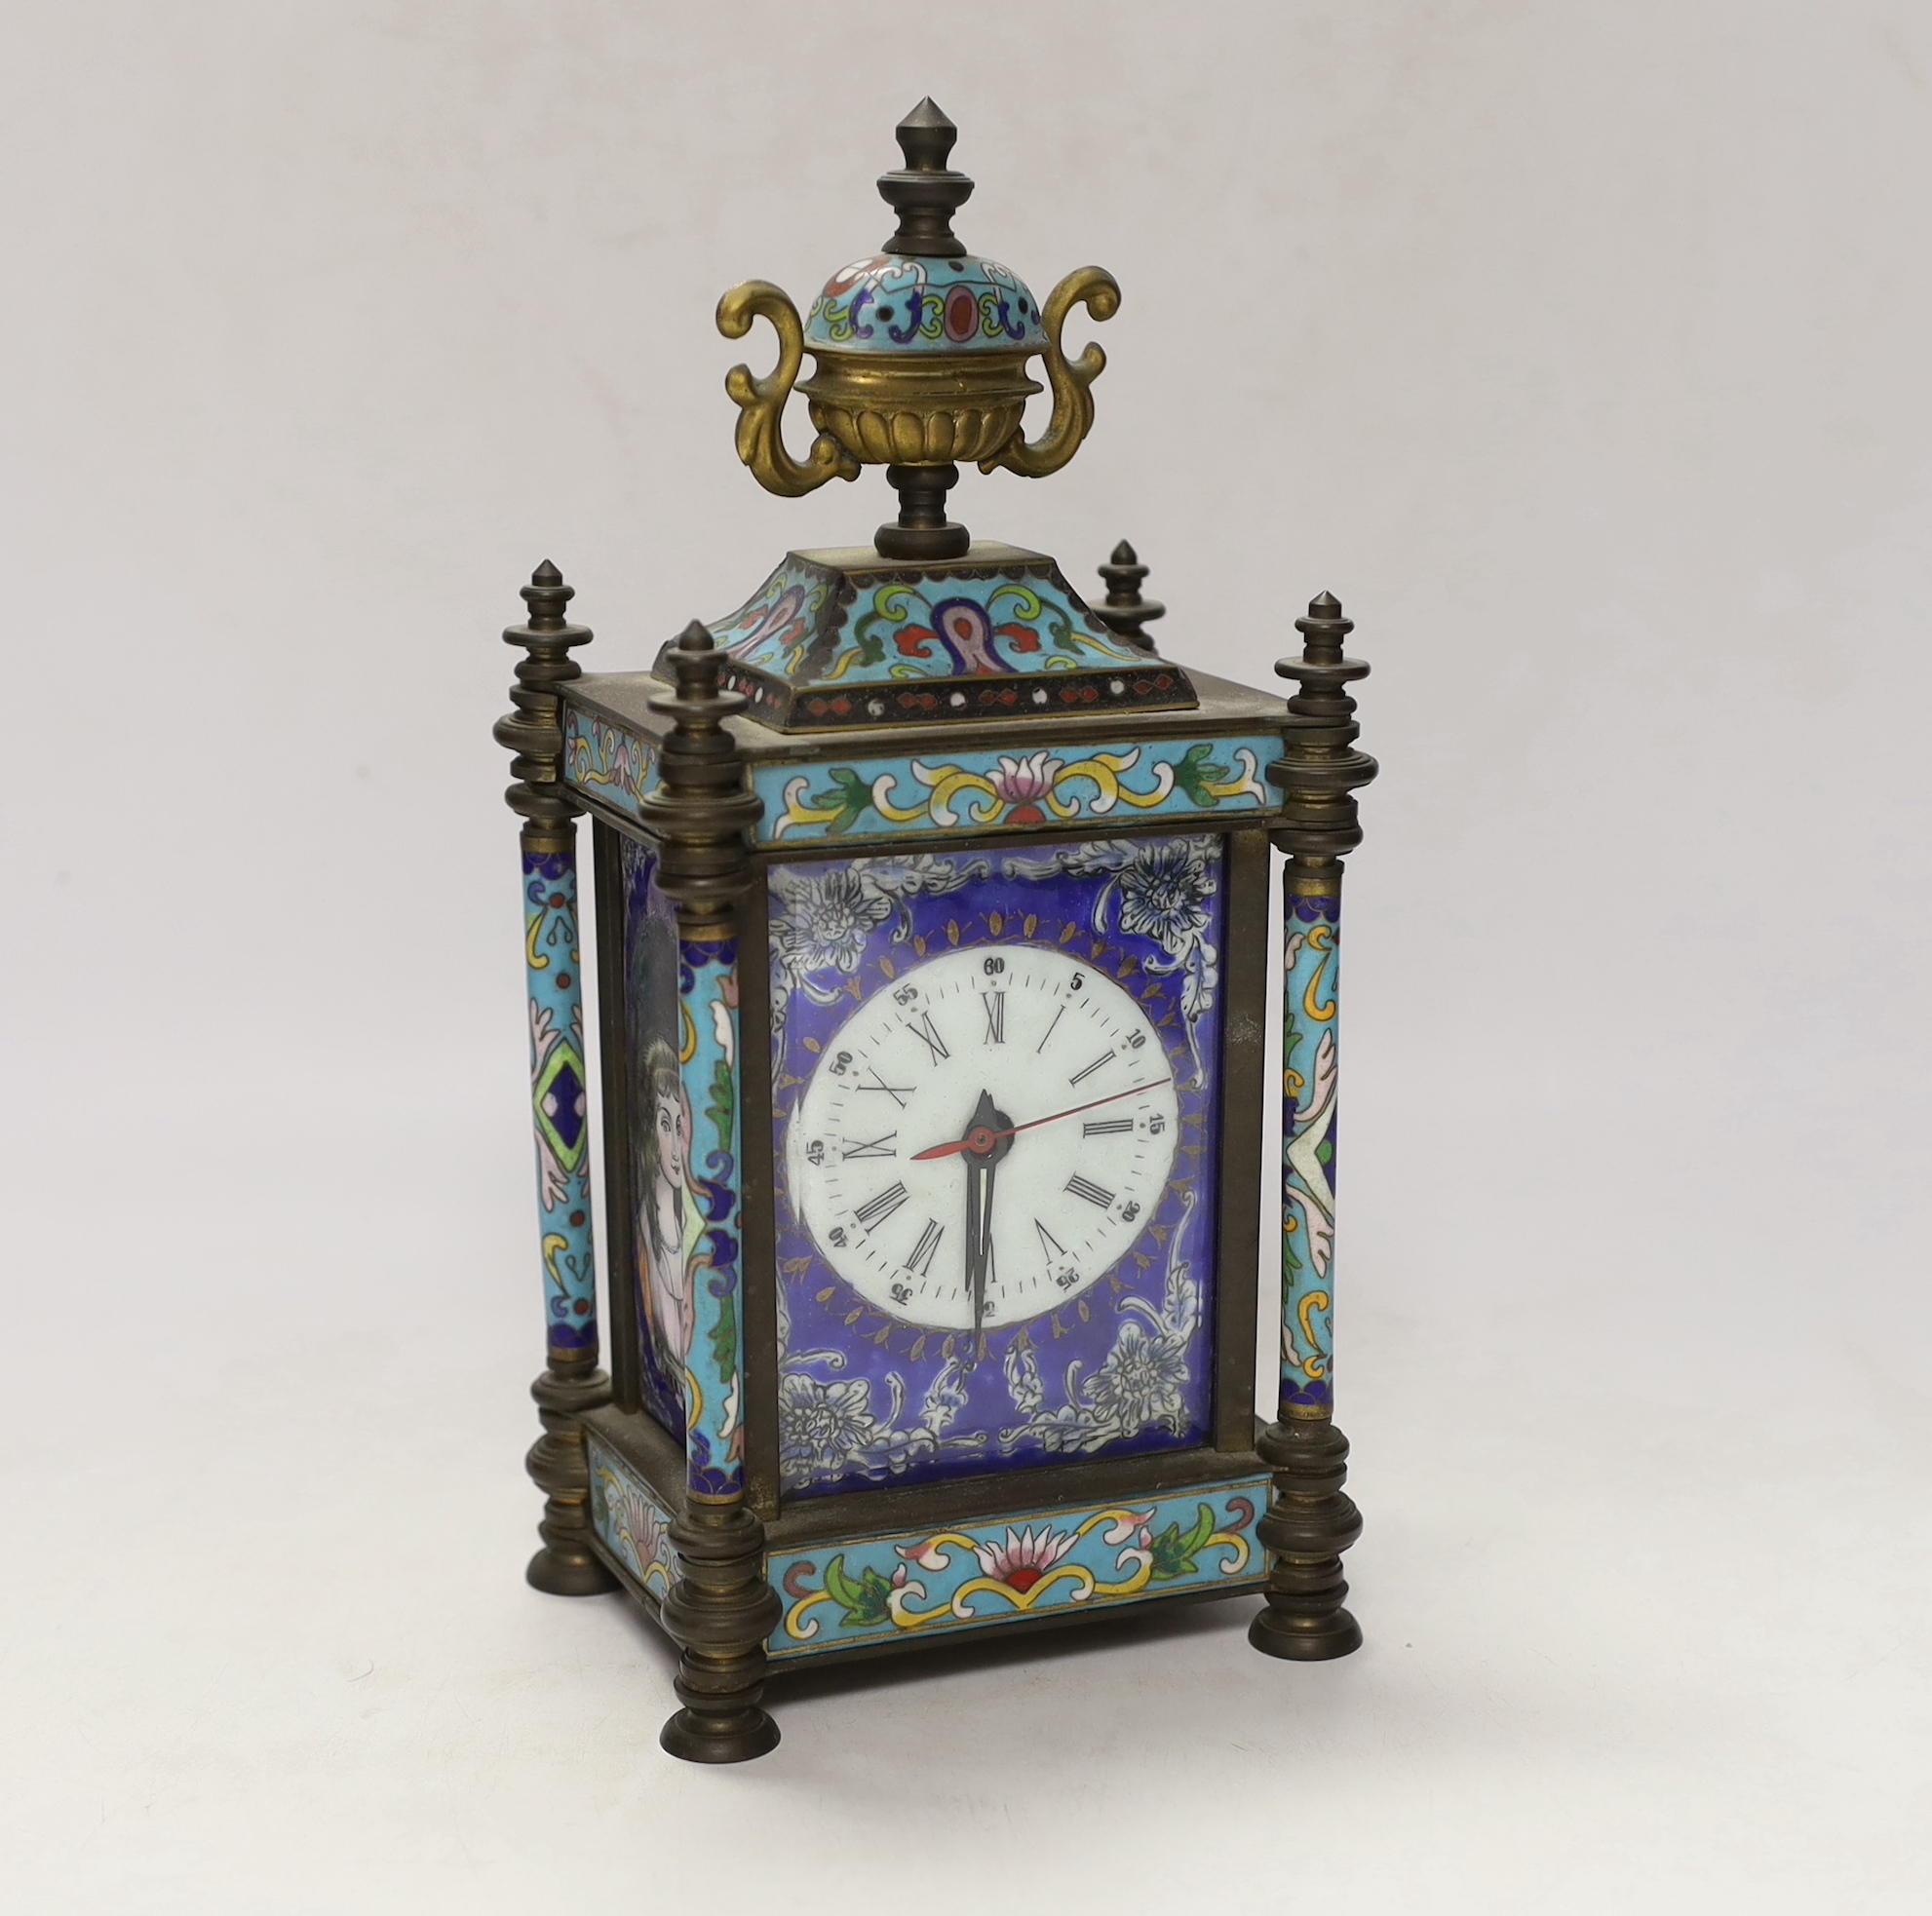 A 20th century Cloisonné enamel clock, 26cm high